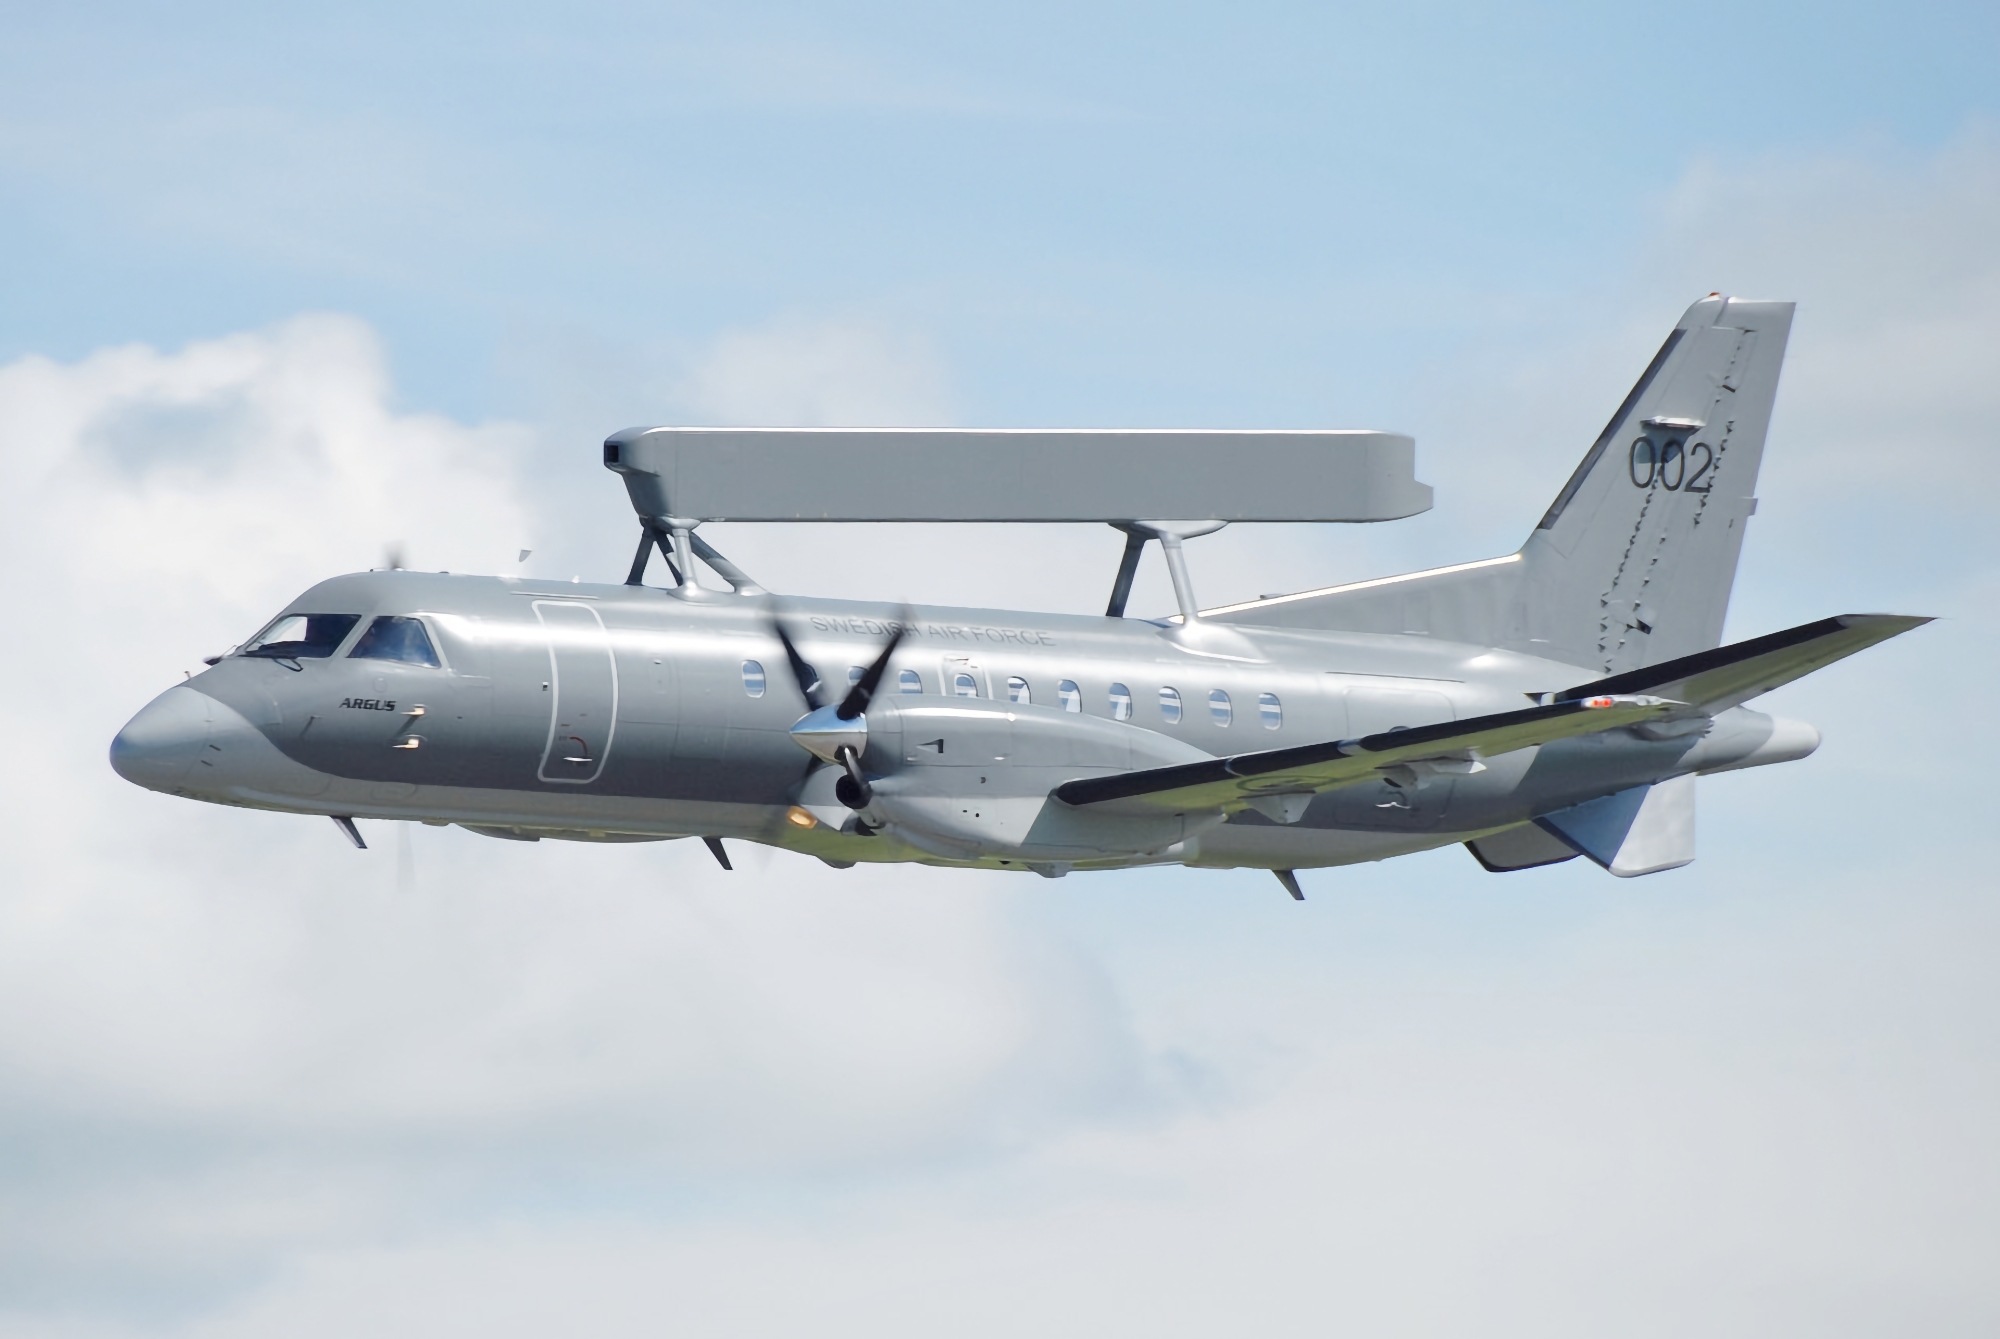 Kontrakt o wartości 58 000 000 USD: Polska kupuje dwa samoloty wykrywania radarowego dalekiego zasięgu Saab 340B AEW-300